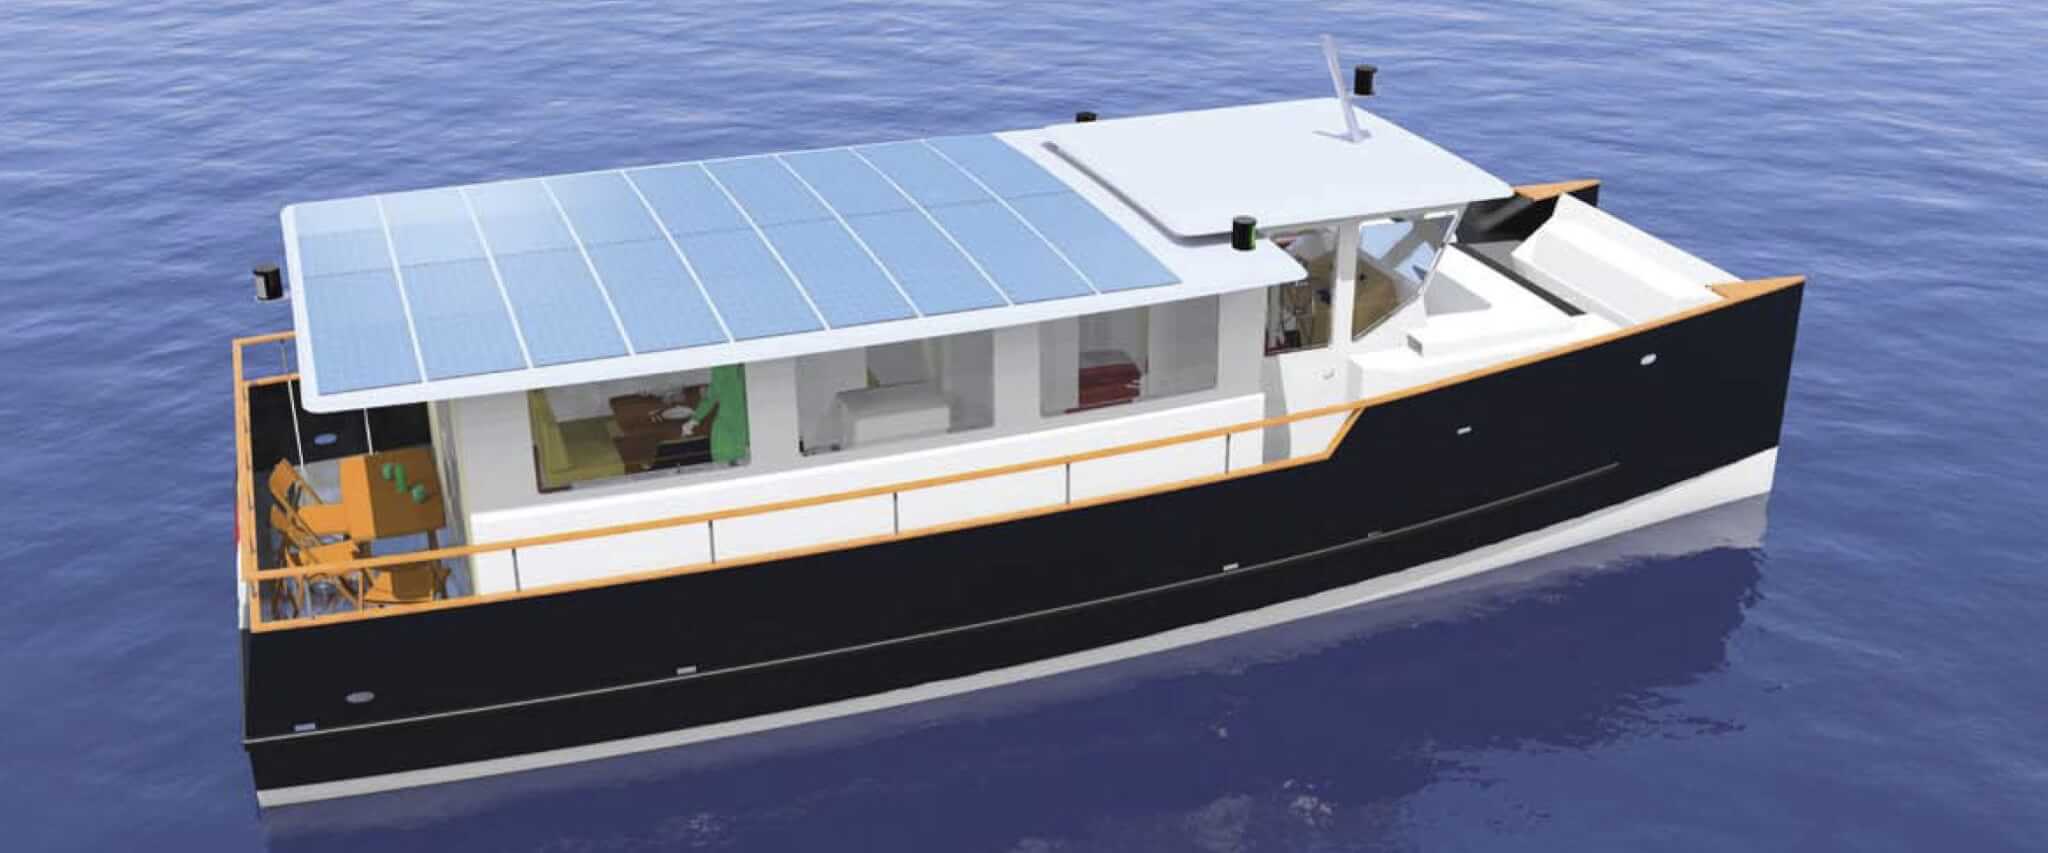 Bateau Luxury Sea avec panneaux solaires